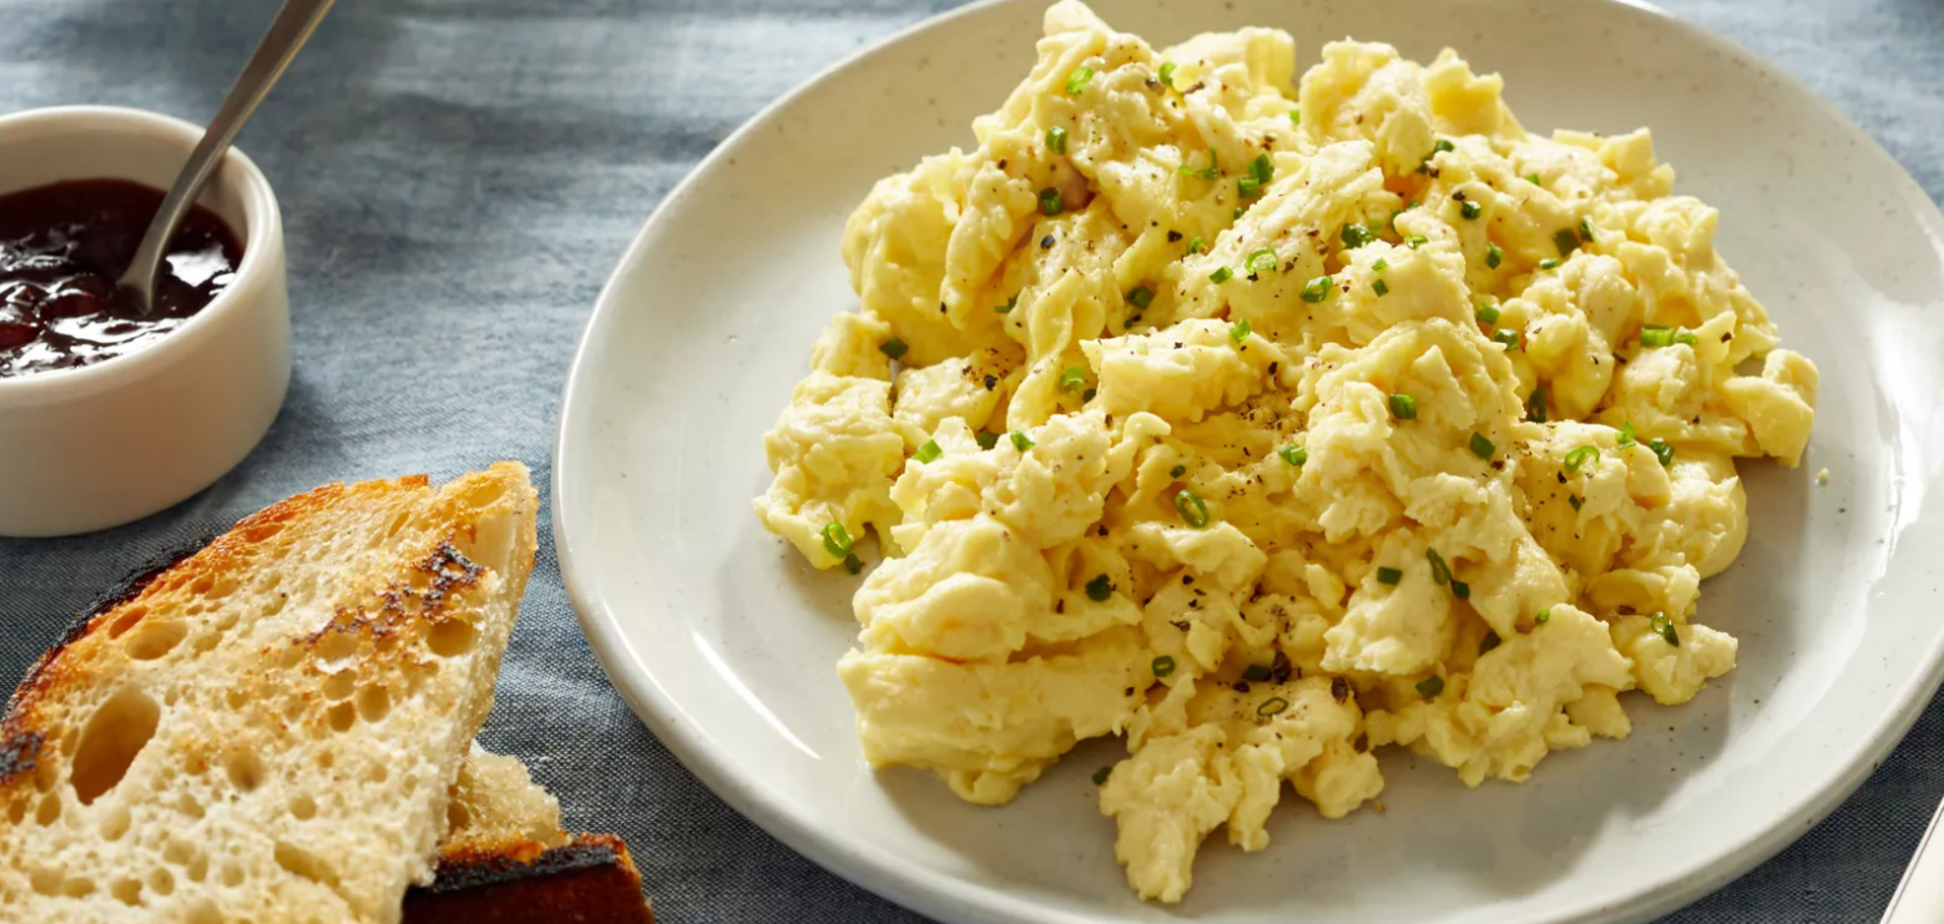 Не яичница и не омлет: что интересного приготовить из яиц на завтрак за 10 минут